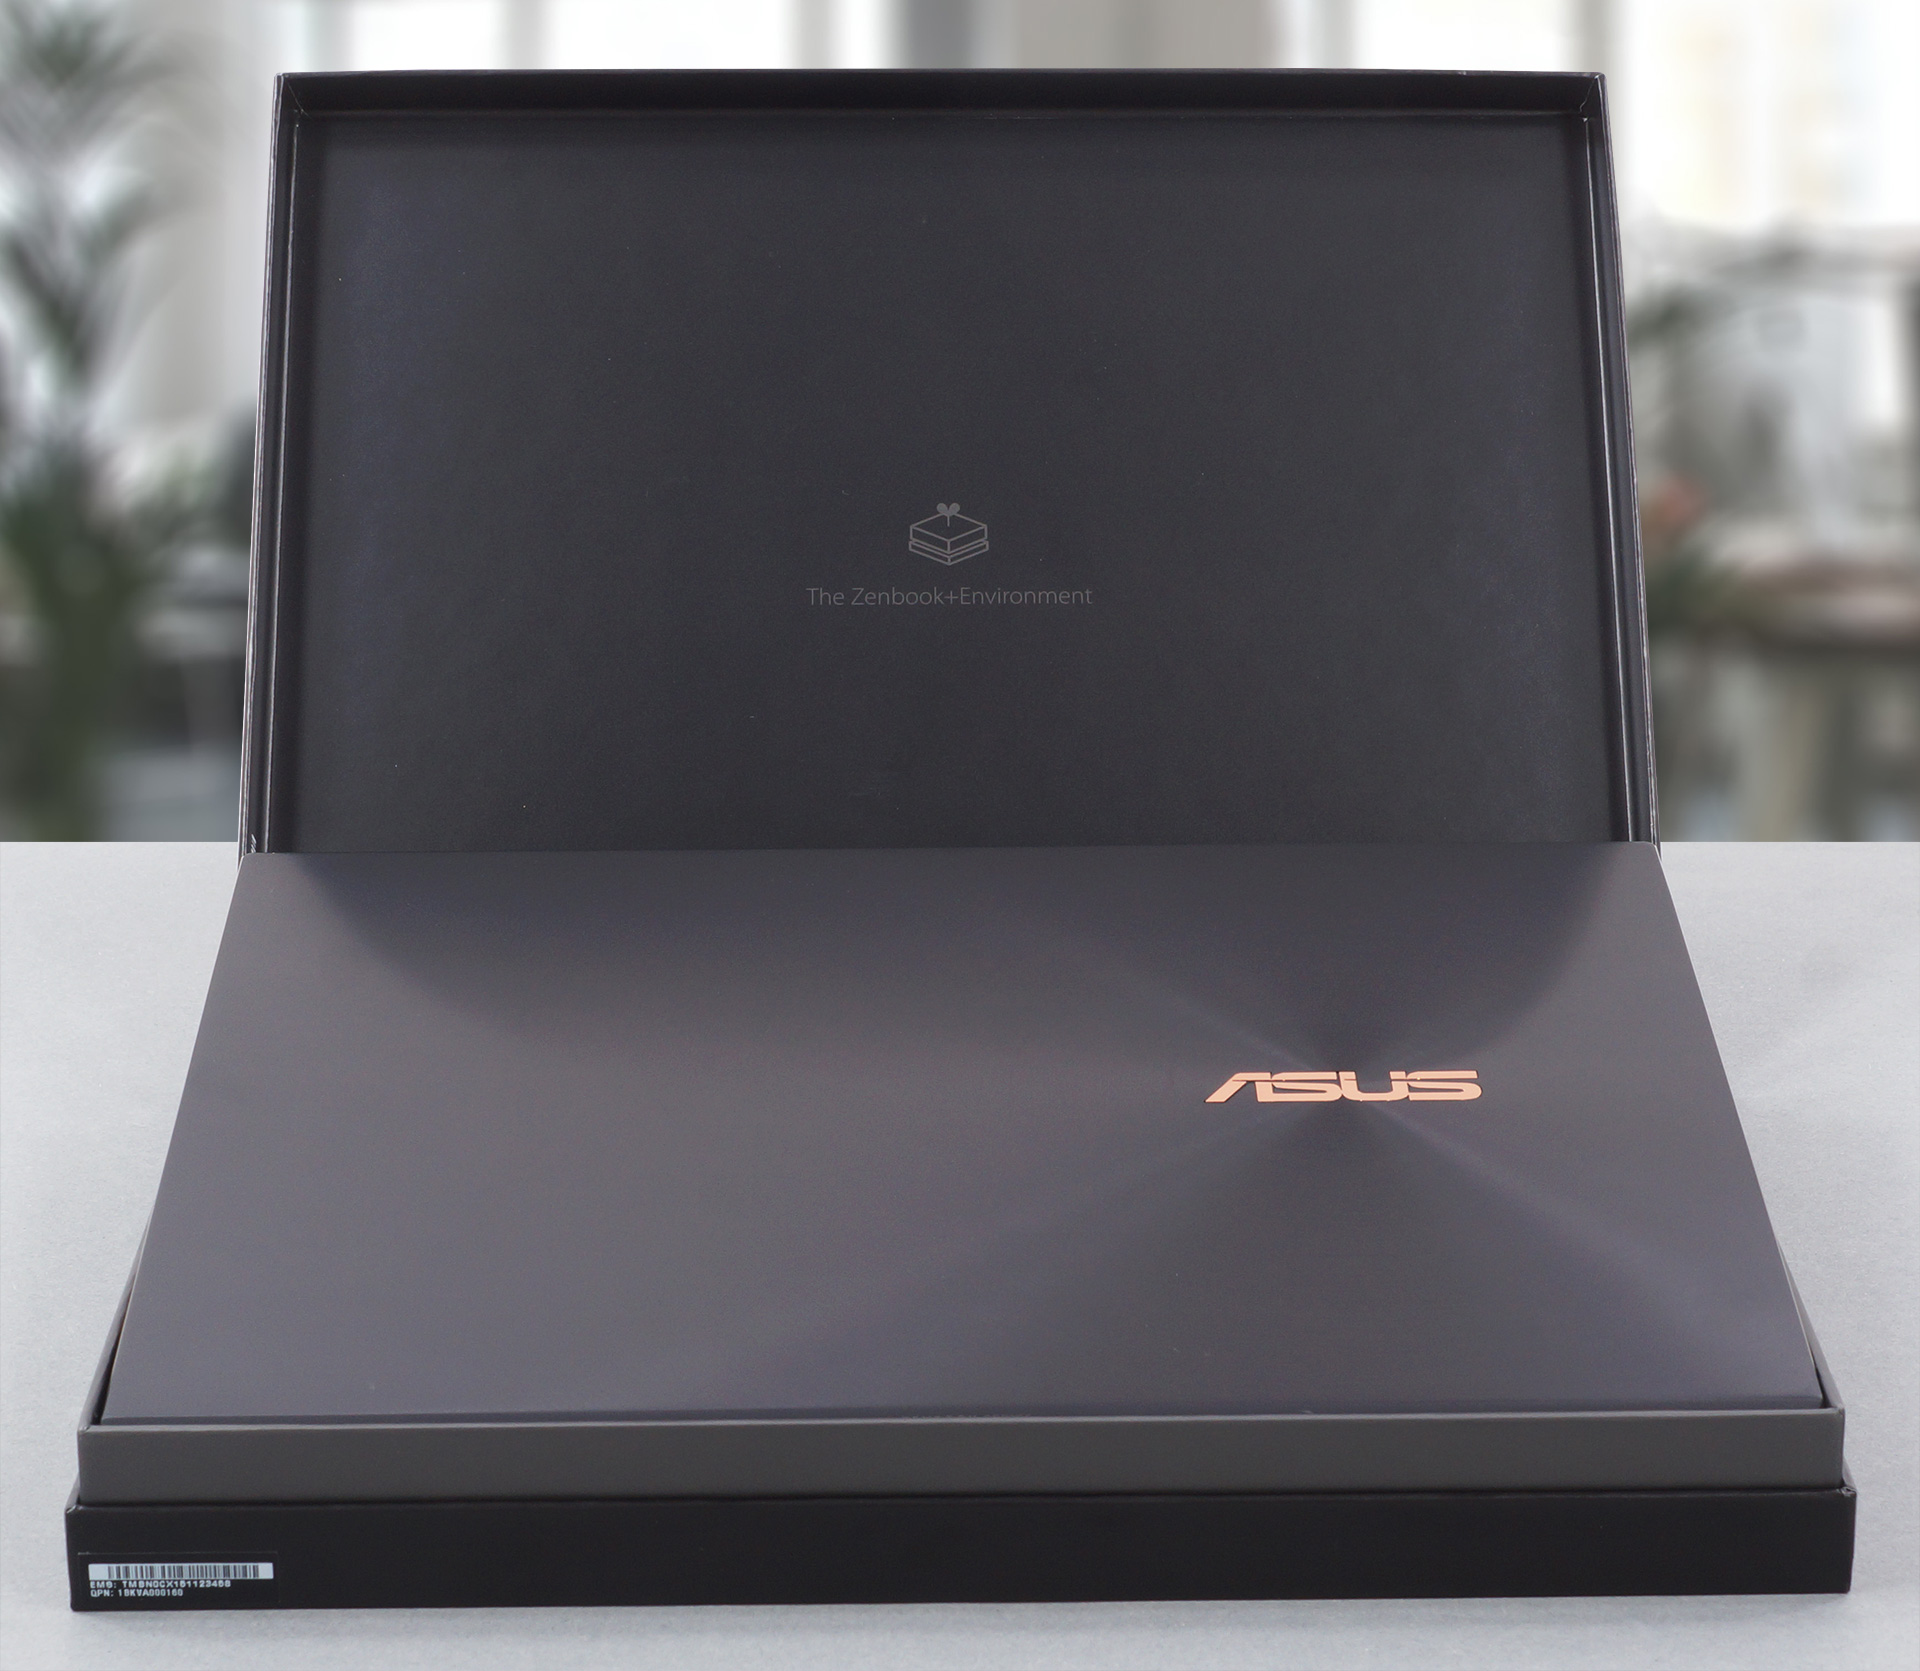 ASUS ZenBook S UX393レビュー - 驚異のビルドクオリティと素晴らしい 